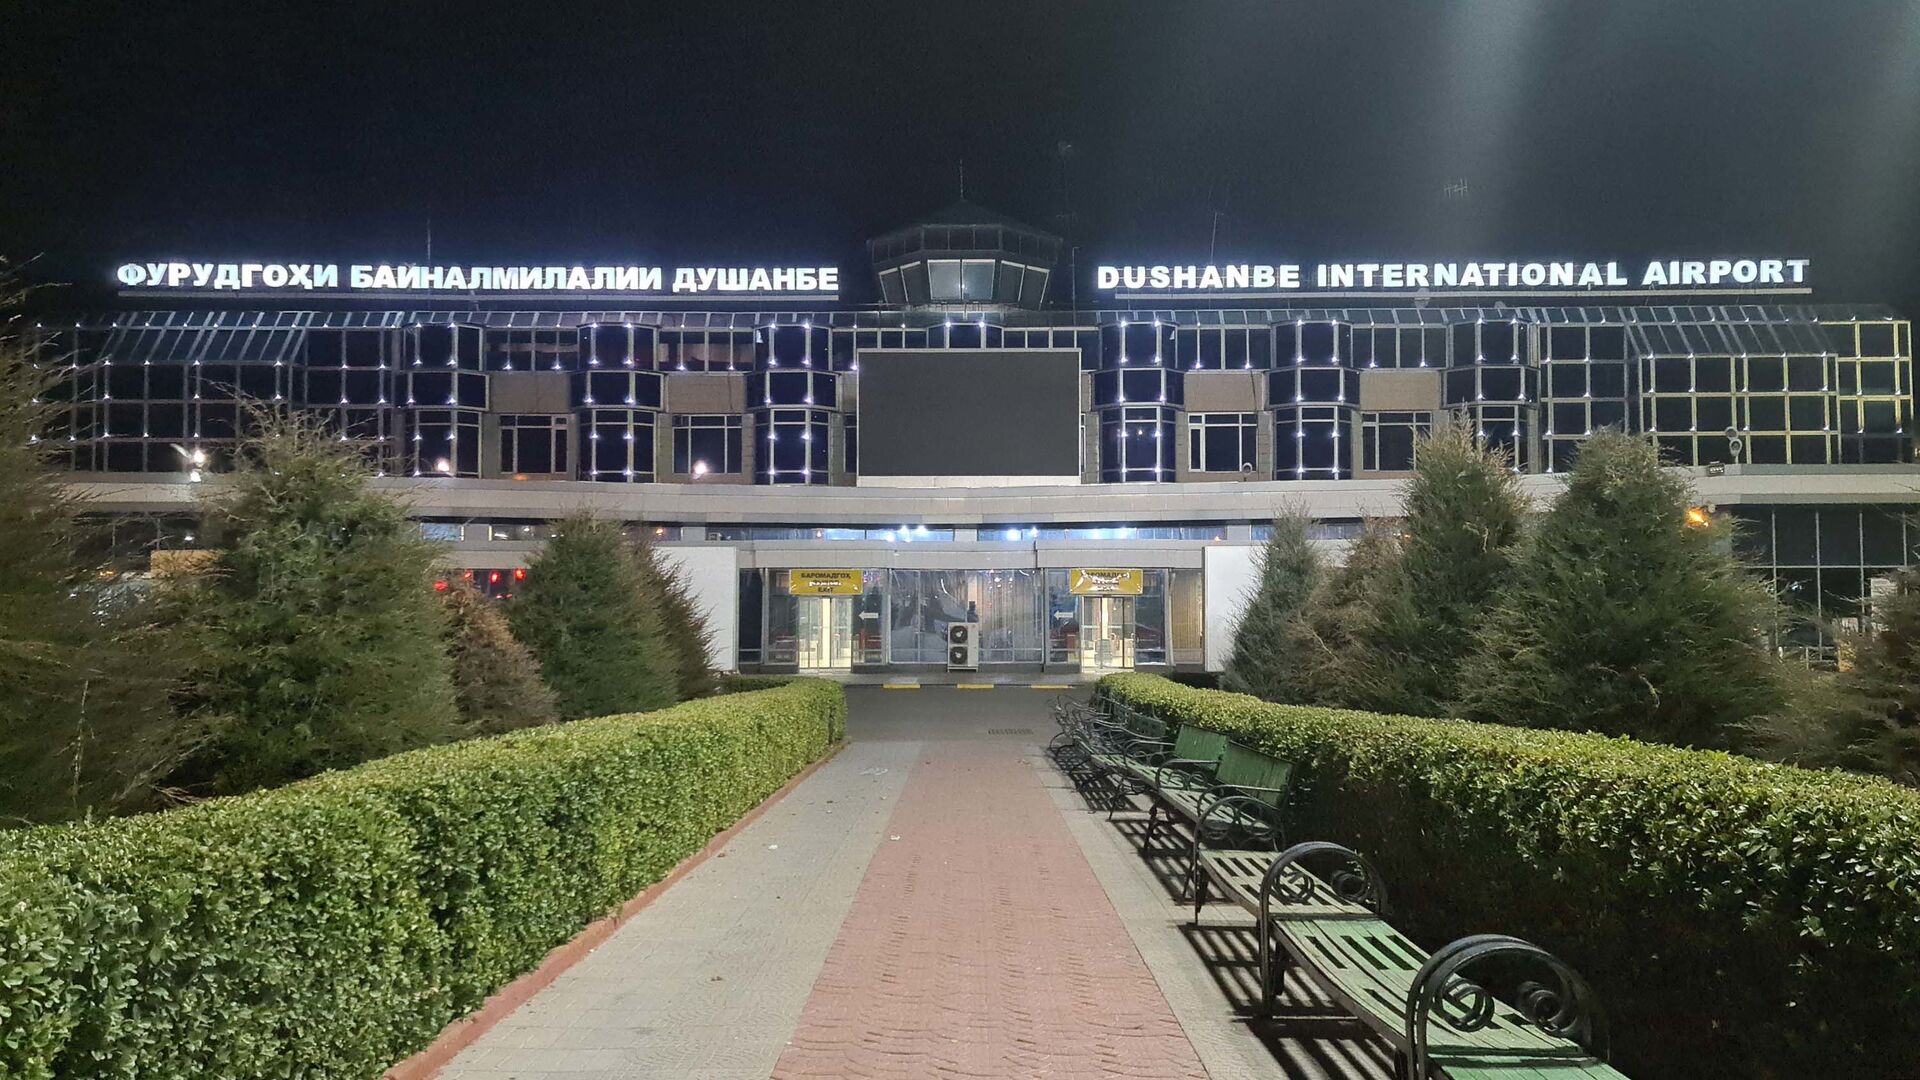 Аэропорт в Душанбе ночью, архивное фото - Sputnik Таджикистан, 1920, 11.05.2021